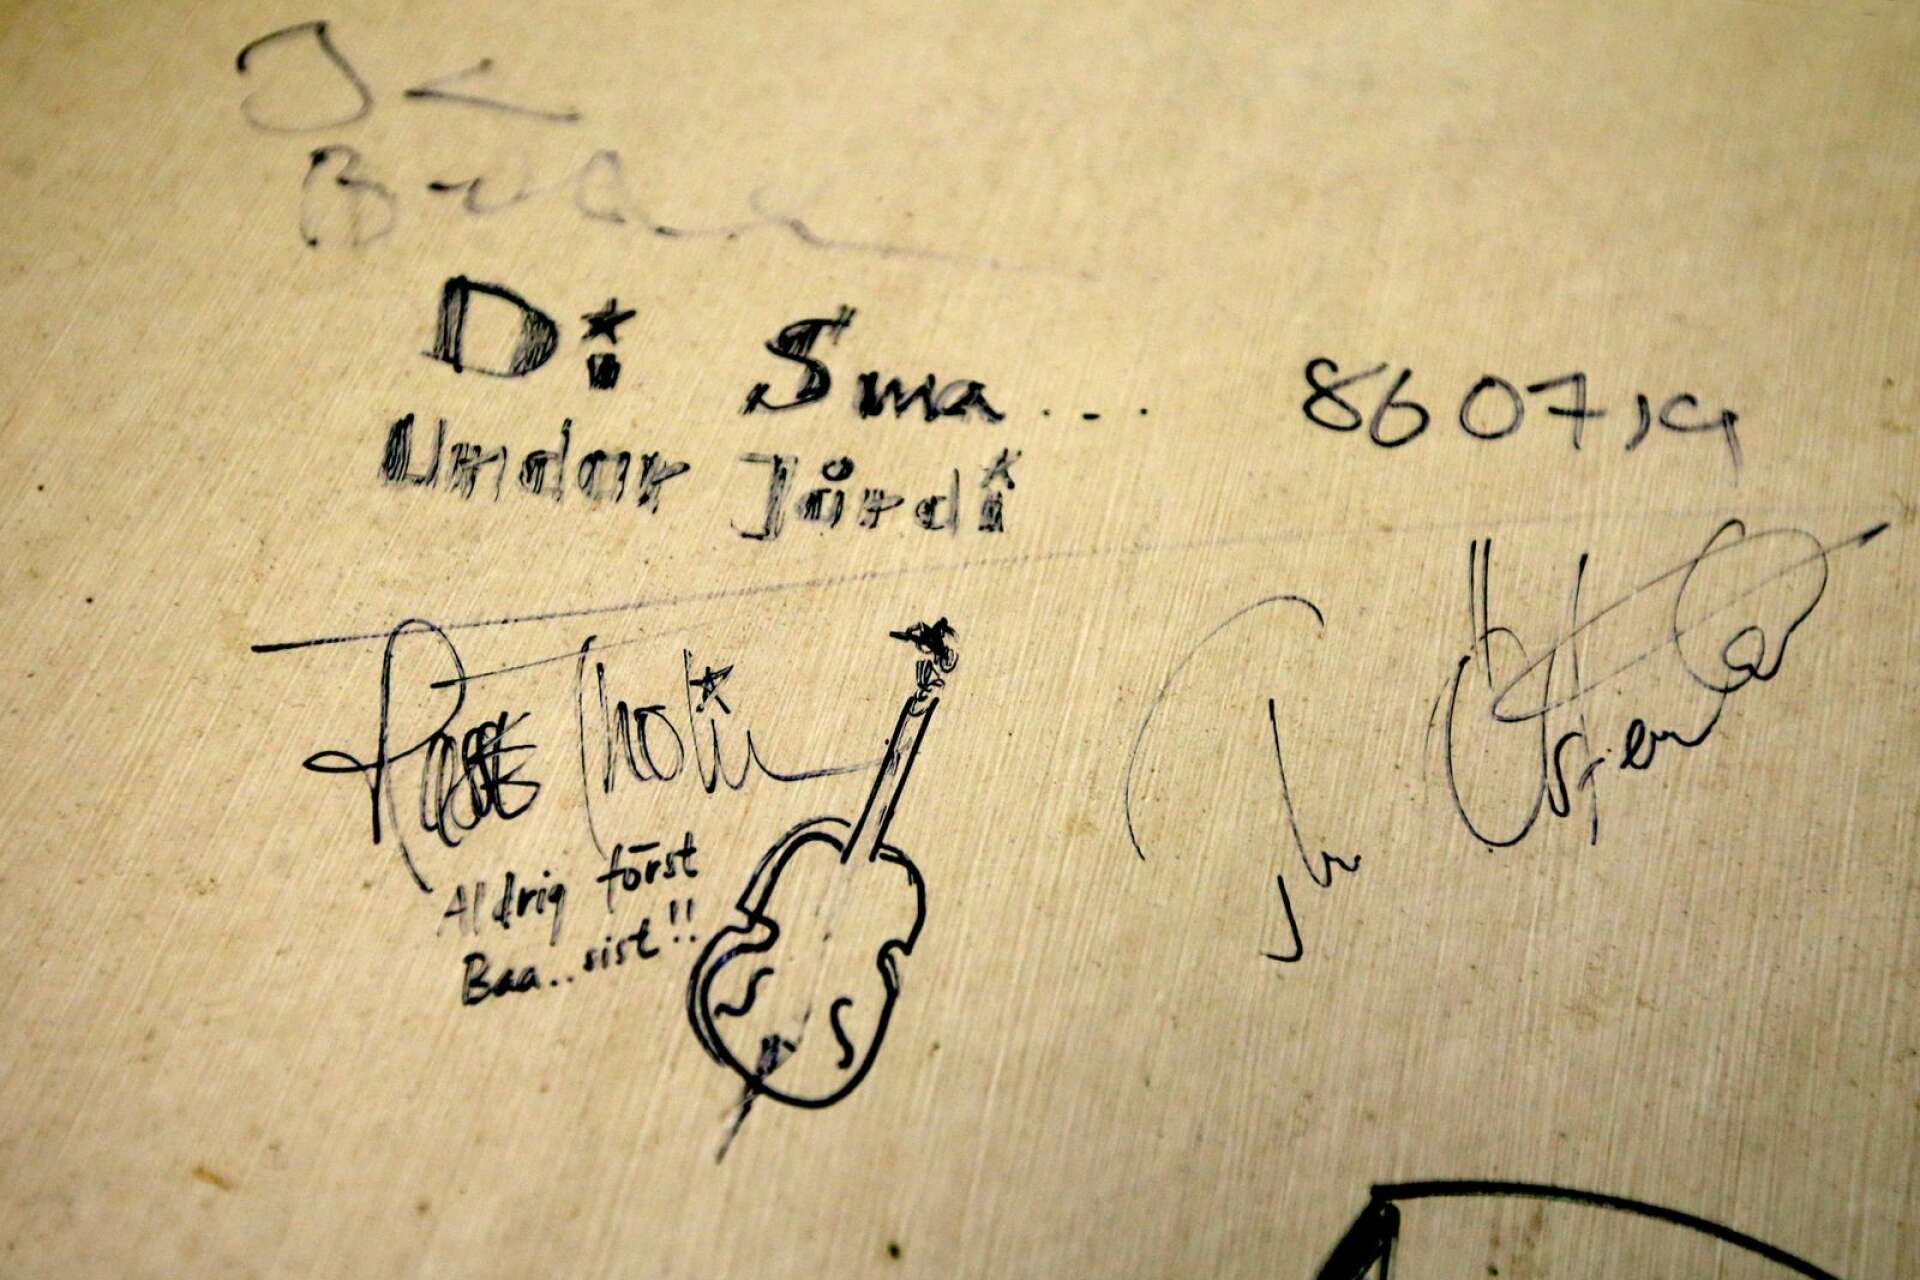 I logen bakom den stora friluftsscenen finns autografer av bland andra Di små undar jordi och The Boppers.